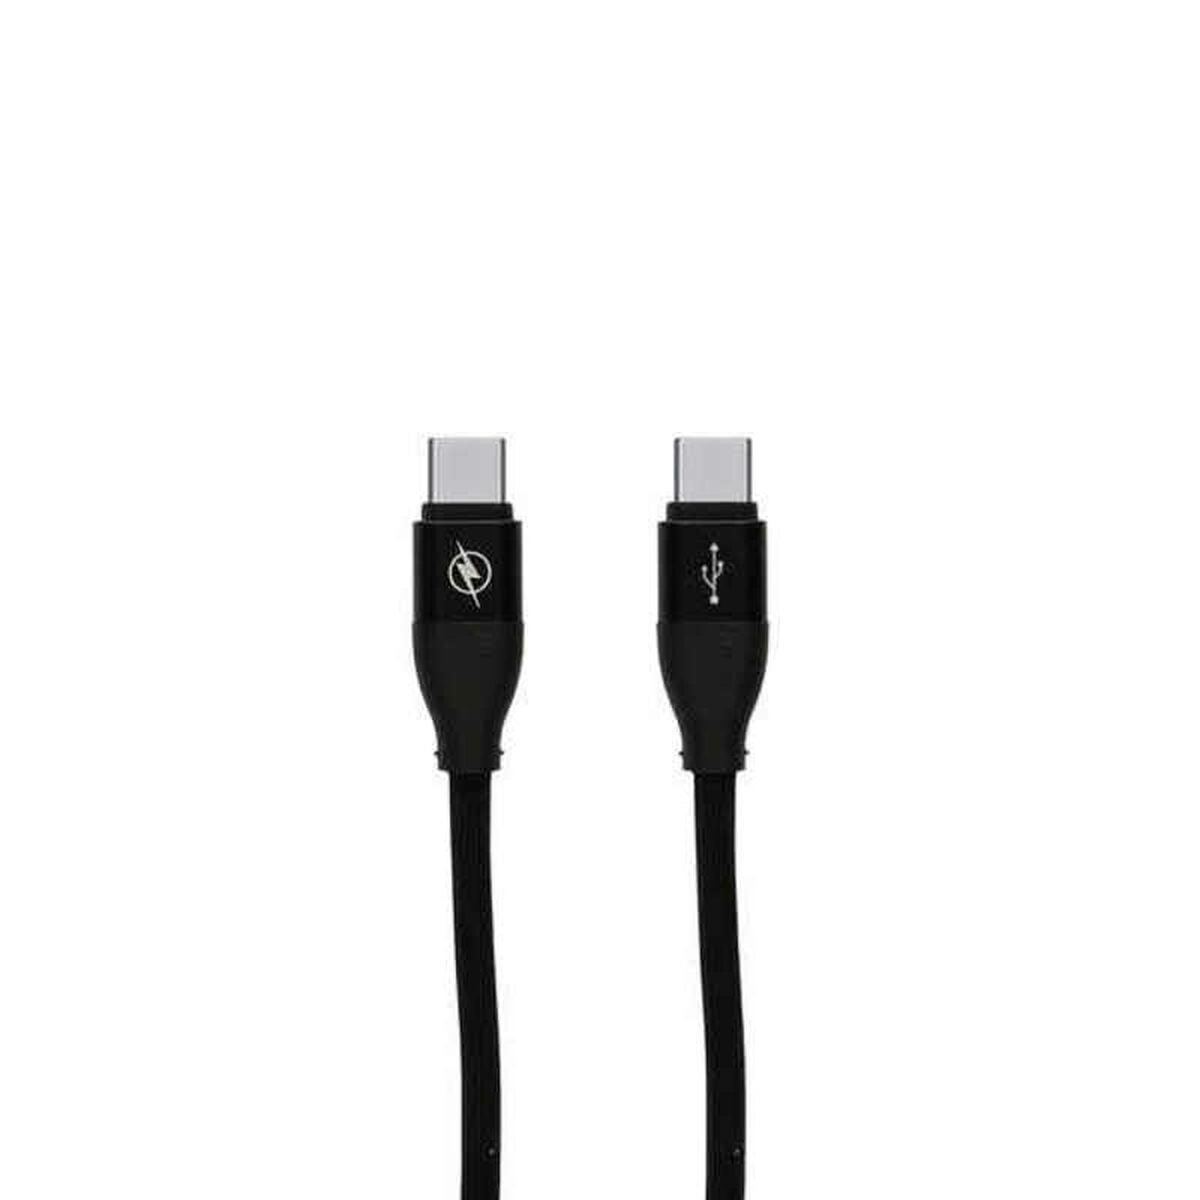 Daten-/Ladekabel mit USB-Kontakt Typ C schwarz (1,5 m)